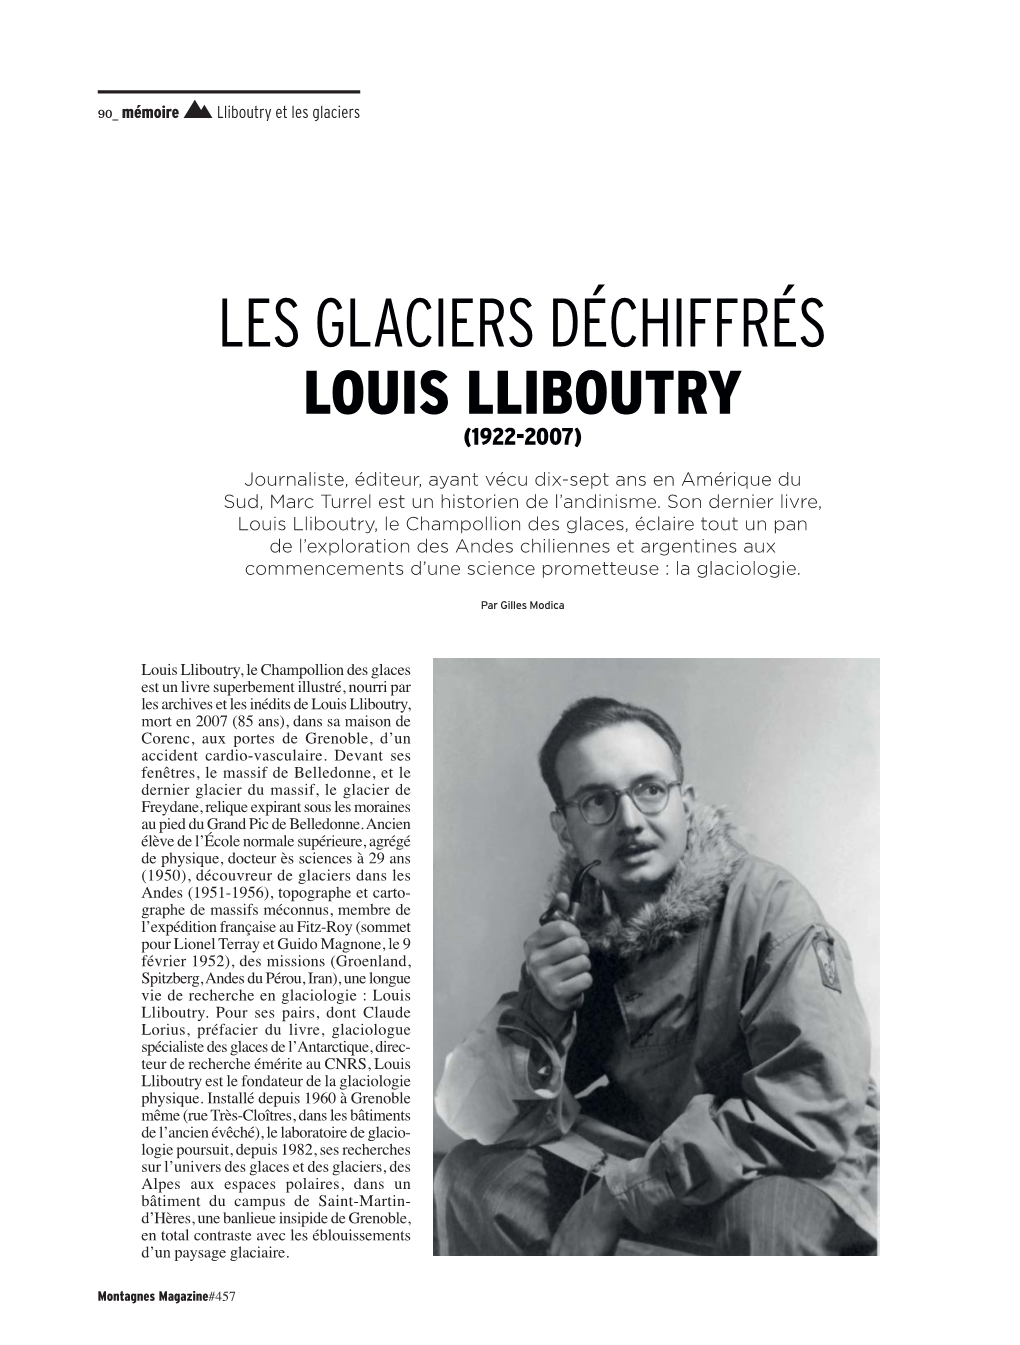 Les Glaciers Déchiffrés Louis Lliboutry (1922-2007)